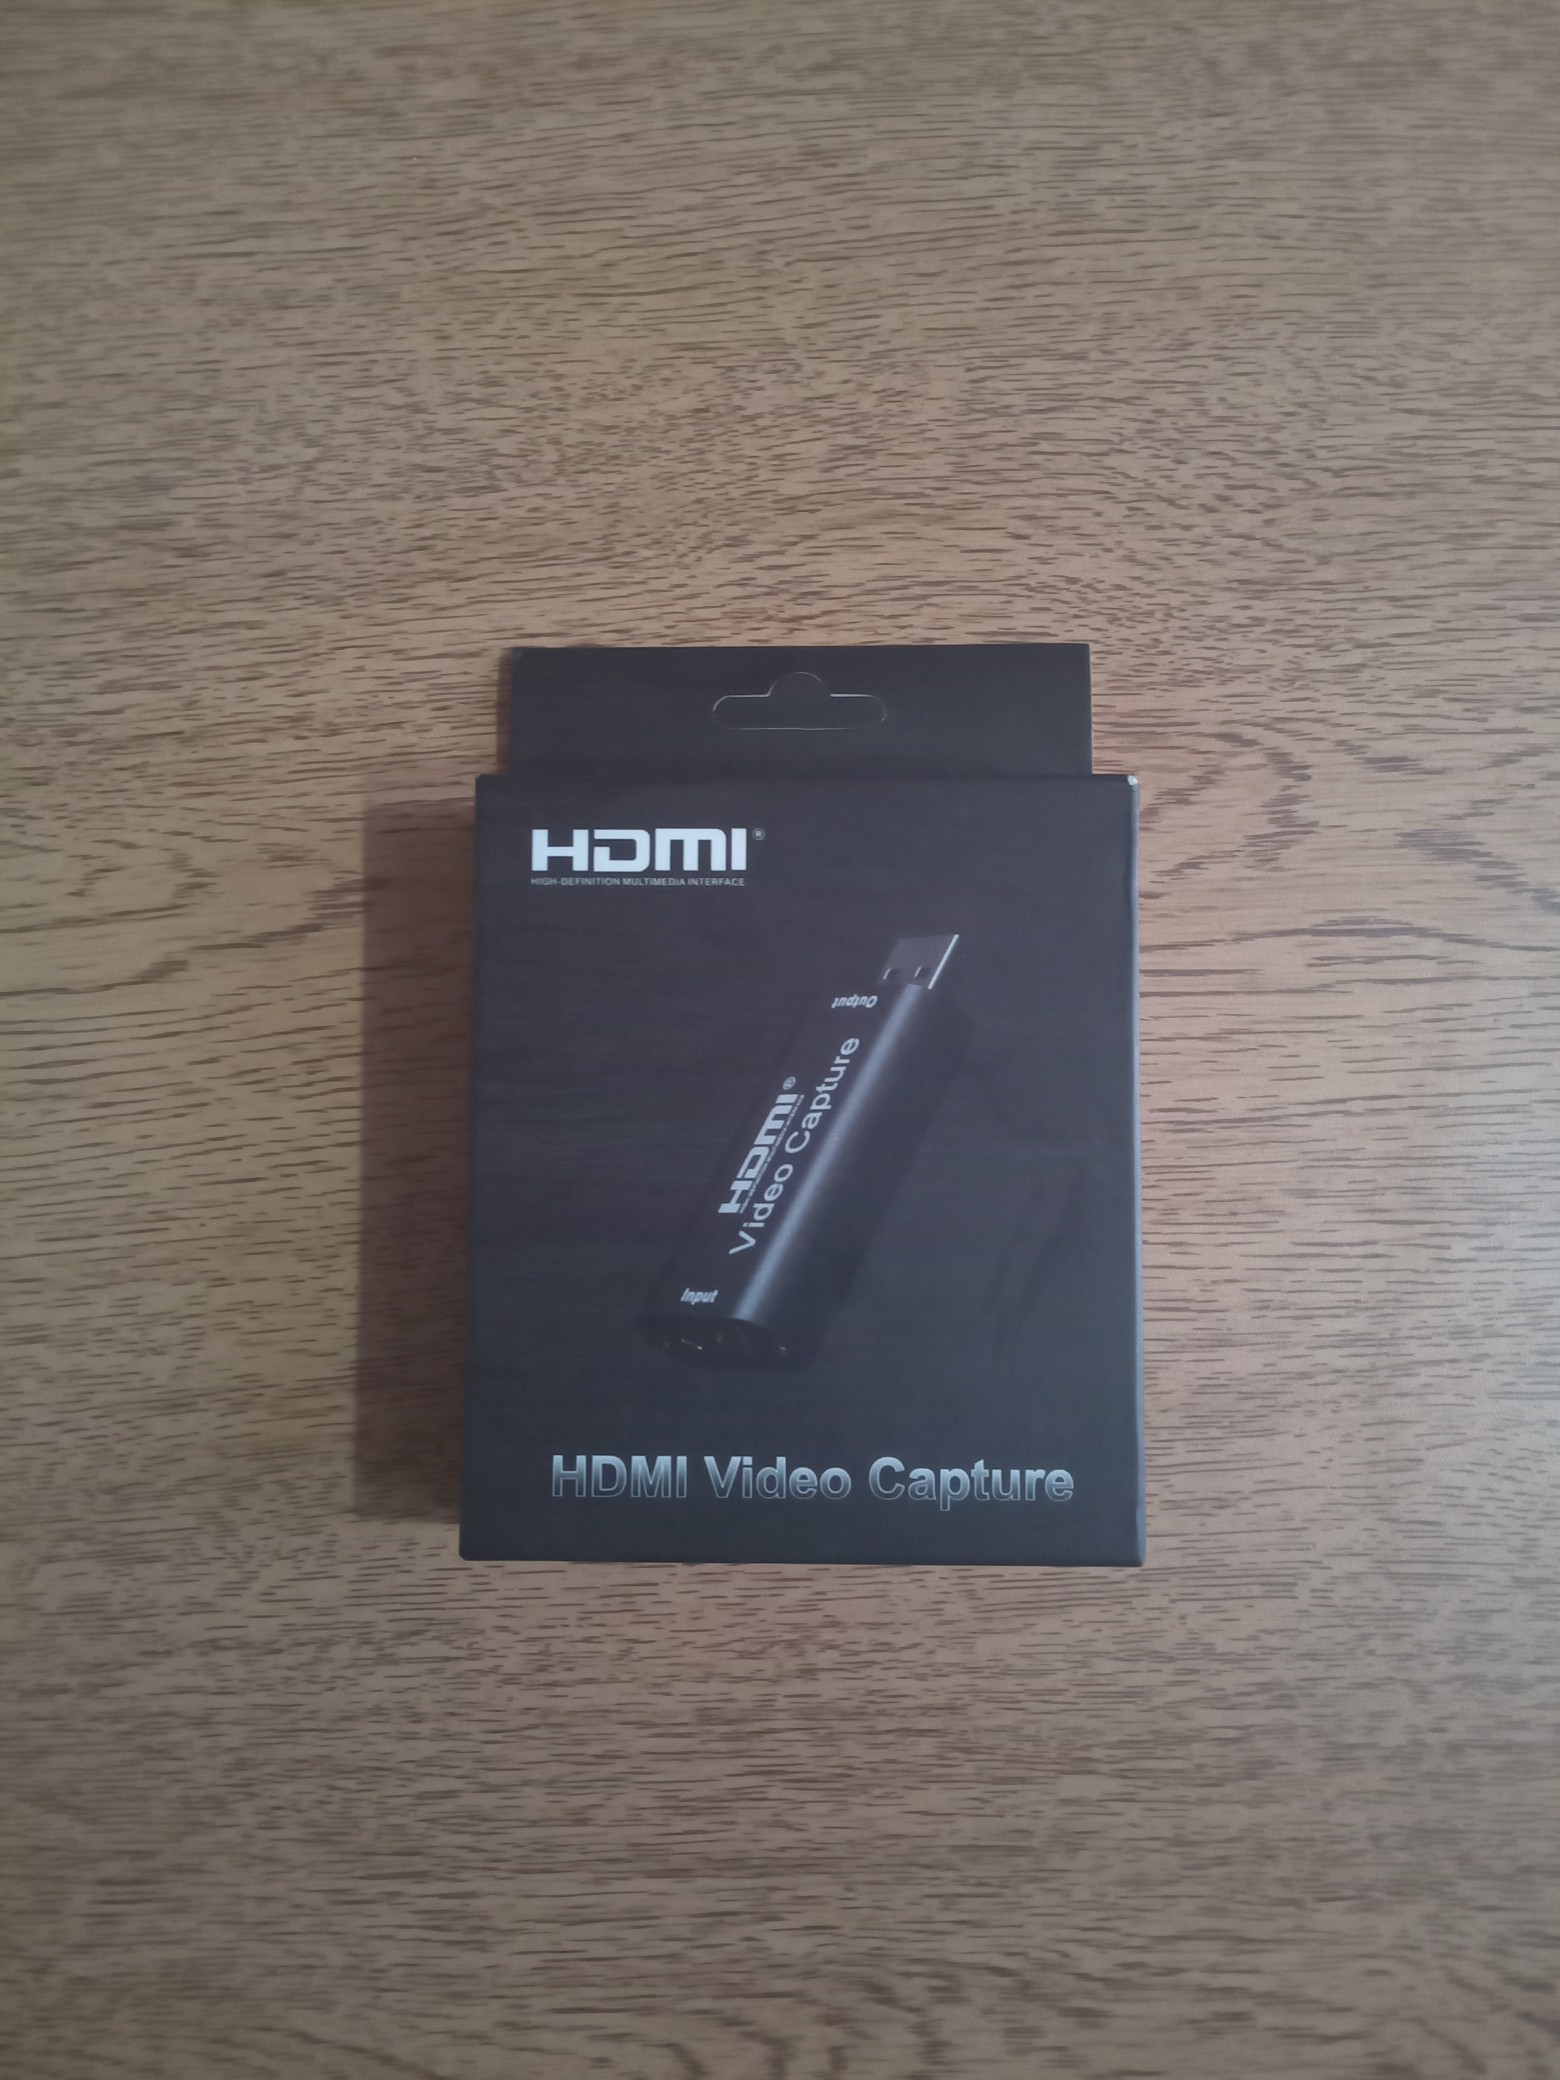 camaras y audio - Captura de video HDMI 0